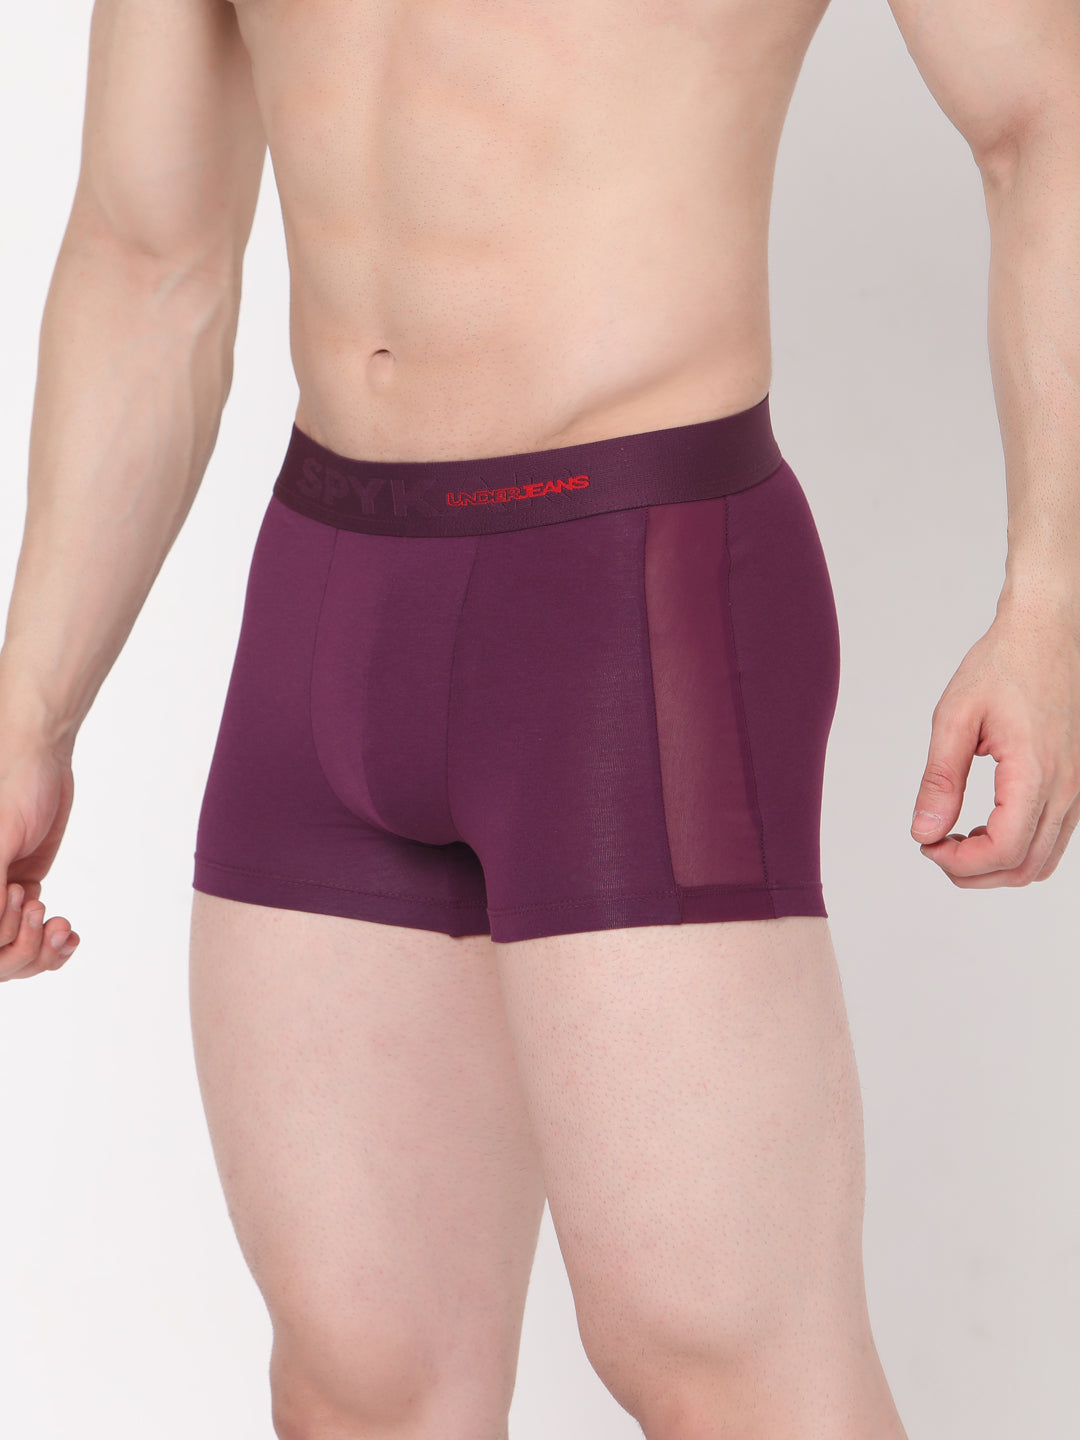 Men Premium Cotton Blend Purple Trunk - (Pack of 2)- UnderJeans by Spykar